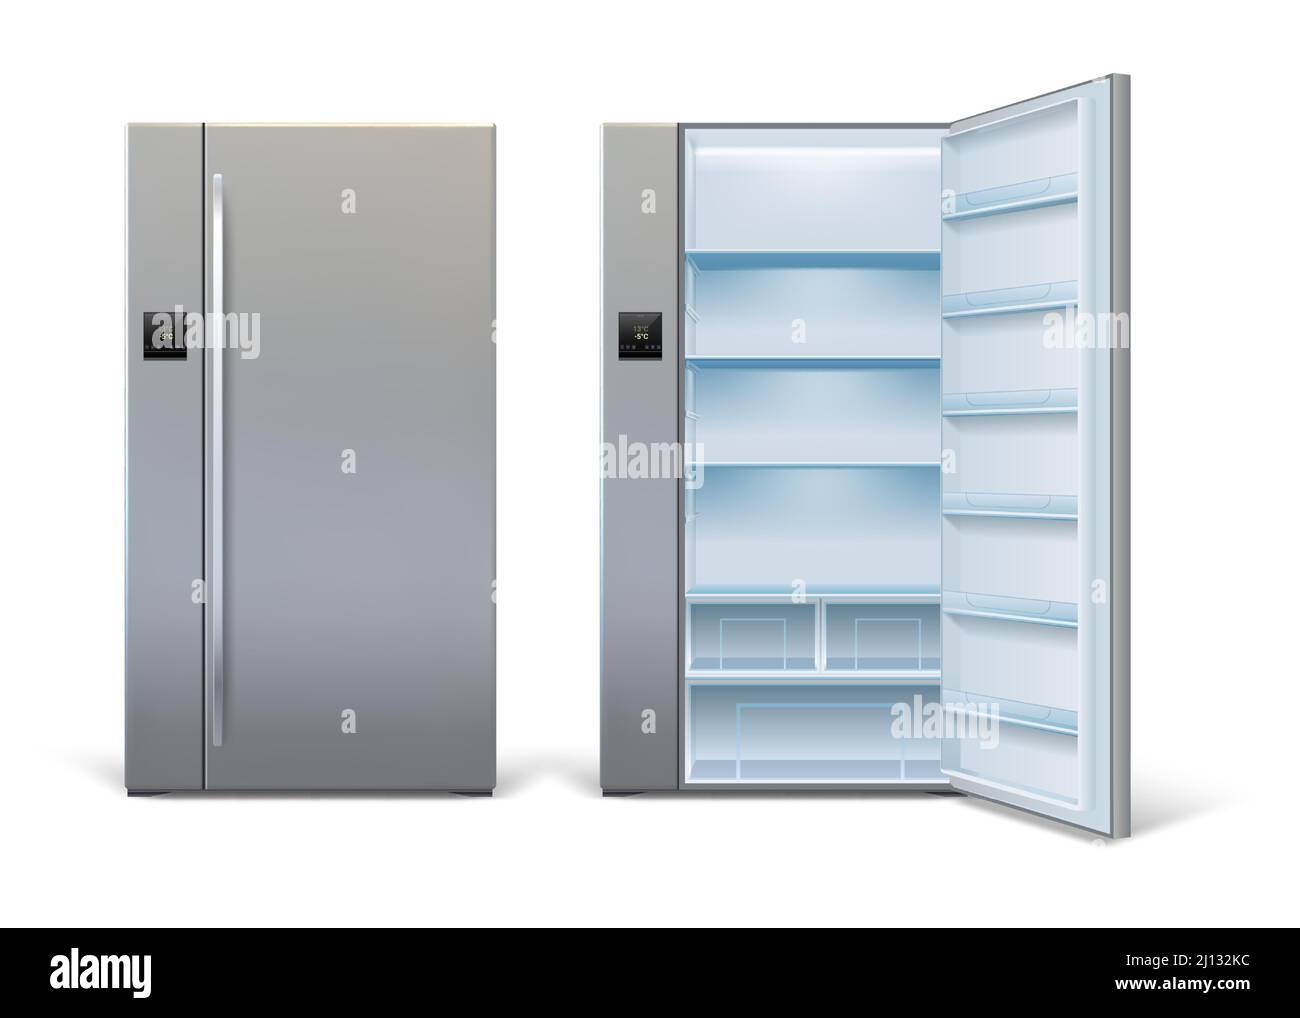 Realistische offene und geschlossene moderne Kühlschrank Mockup mit Regalen. Leeren Sie den großen Kühlschrank mit Sensorfeld. Startseite Küche Kühlschrank Vektor-Set Stock Vektor